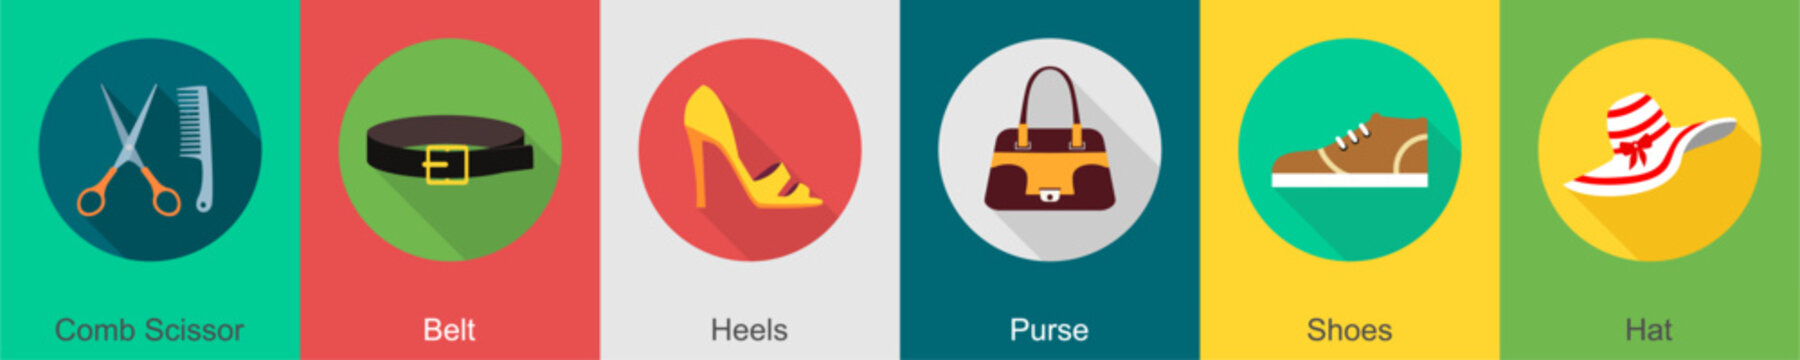 A set of 6 Clothes icons as comb scissor, belt, heels